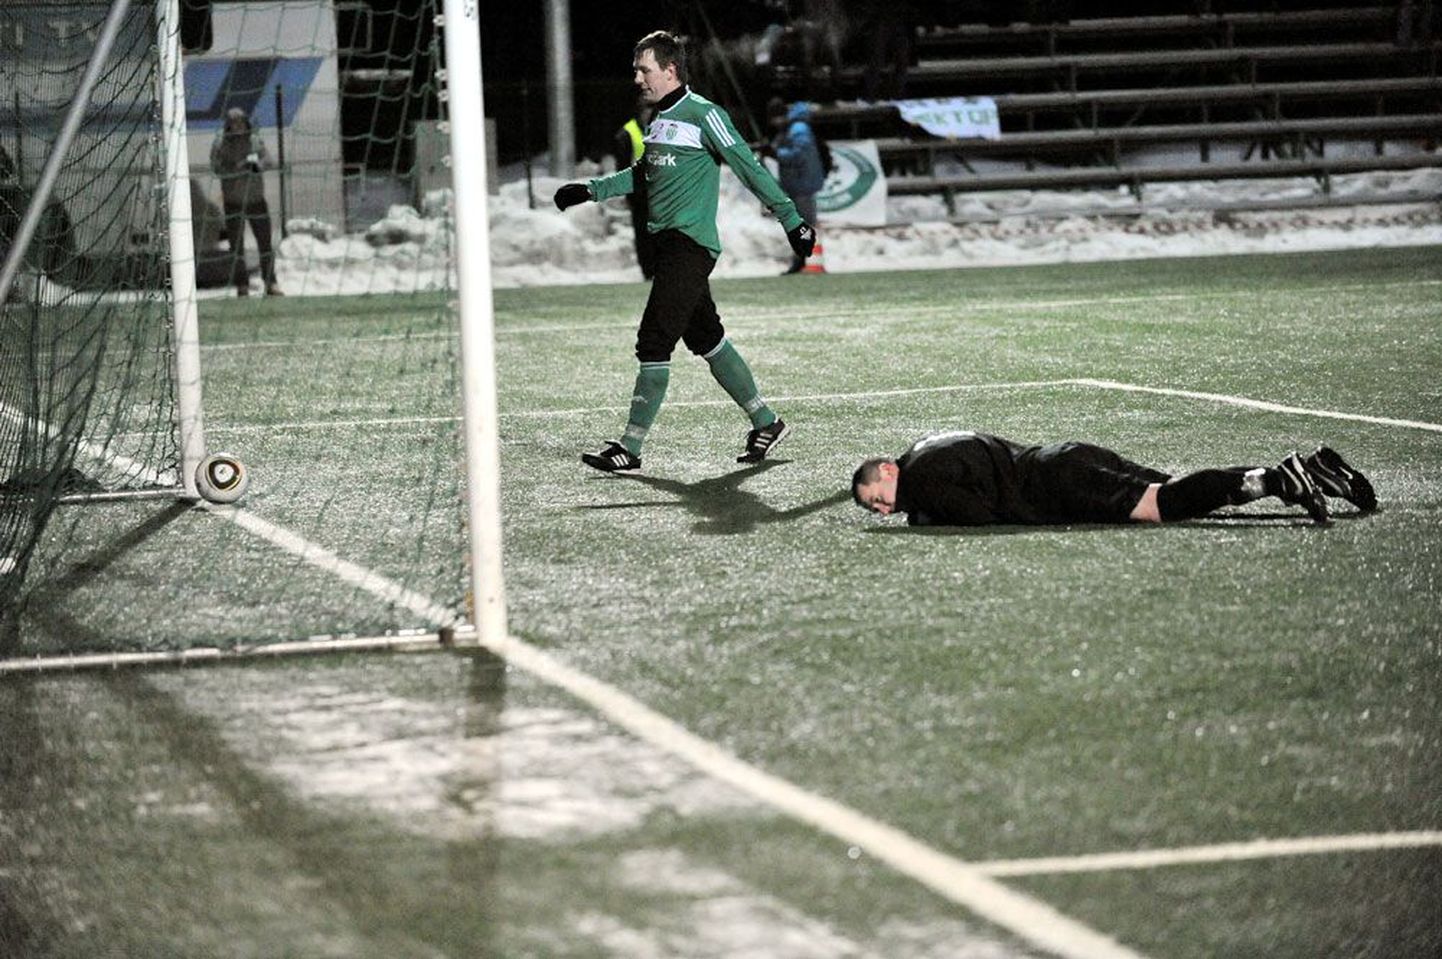 Eesti jalgpalli meistriliiga avavoorus löödi Narva Transi väravavahi Sergei Ussoltsevi (pikali) selja taha kolm palli. Nendest kaks toimetas sinna Tarmo Neemelo (püsti).